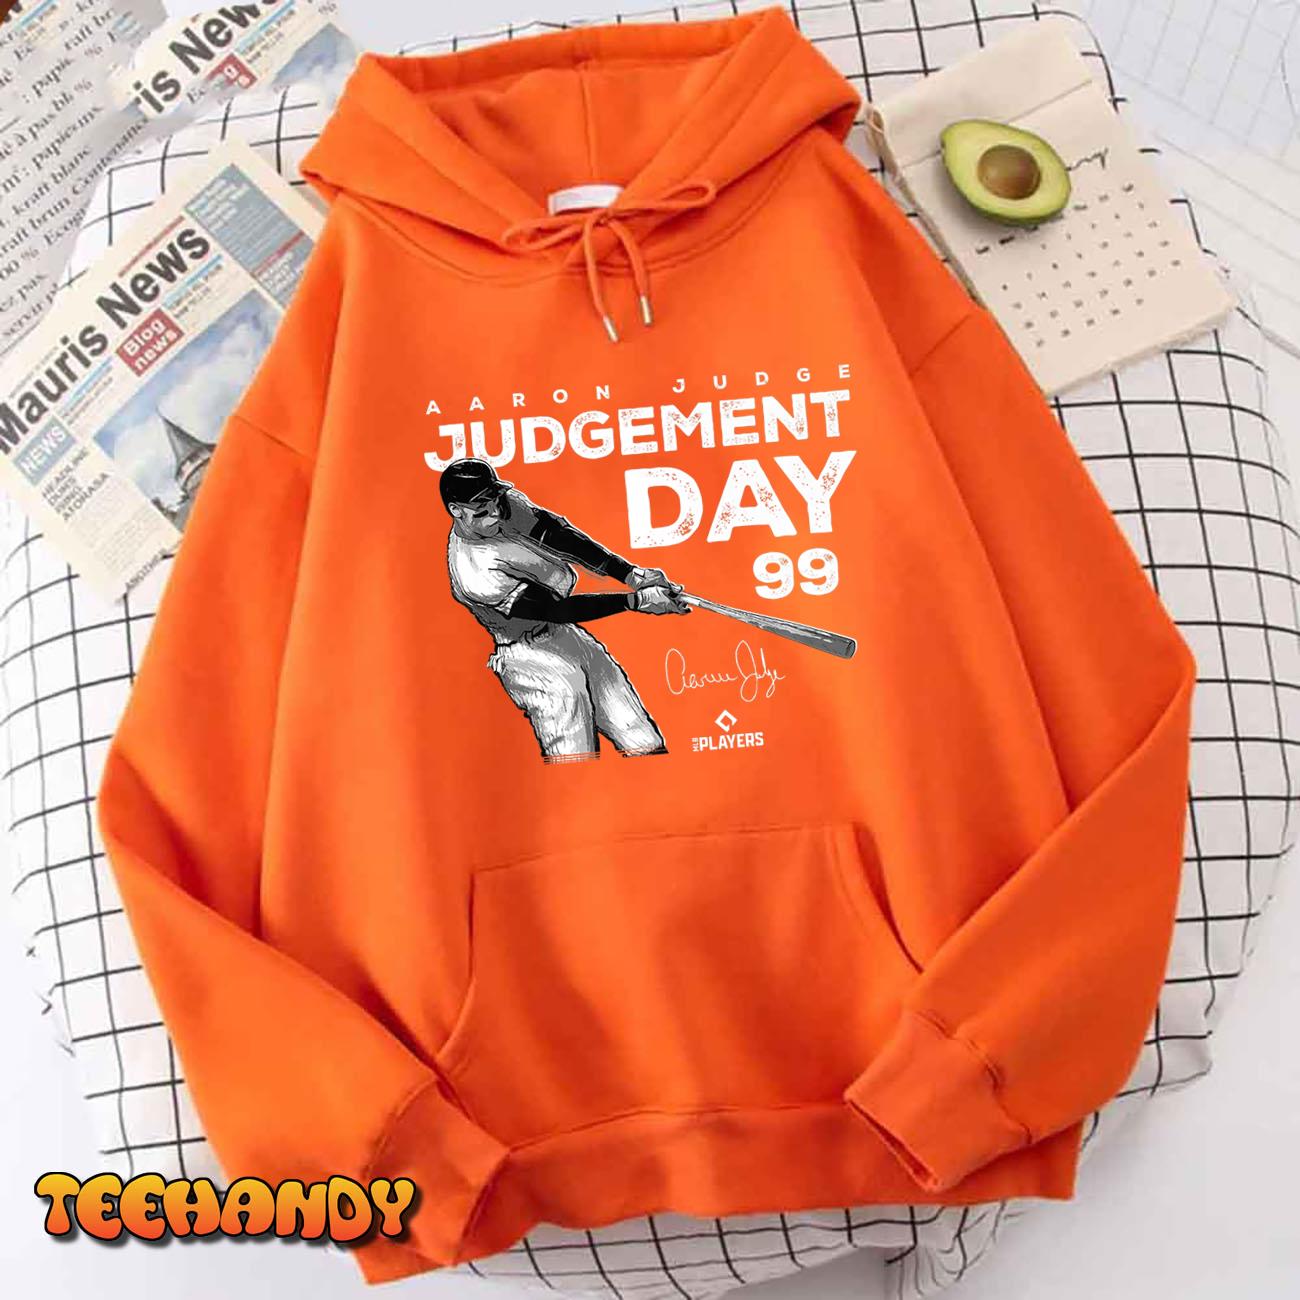 Aaron Judge Judgement Day New York Baseball Player Bronx Premium T Shirt img3 t4